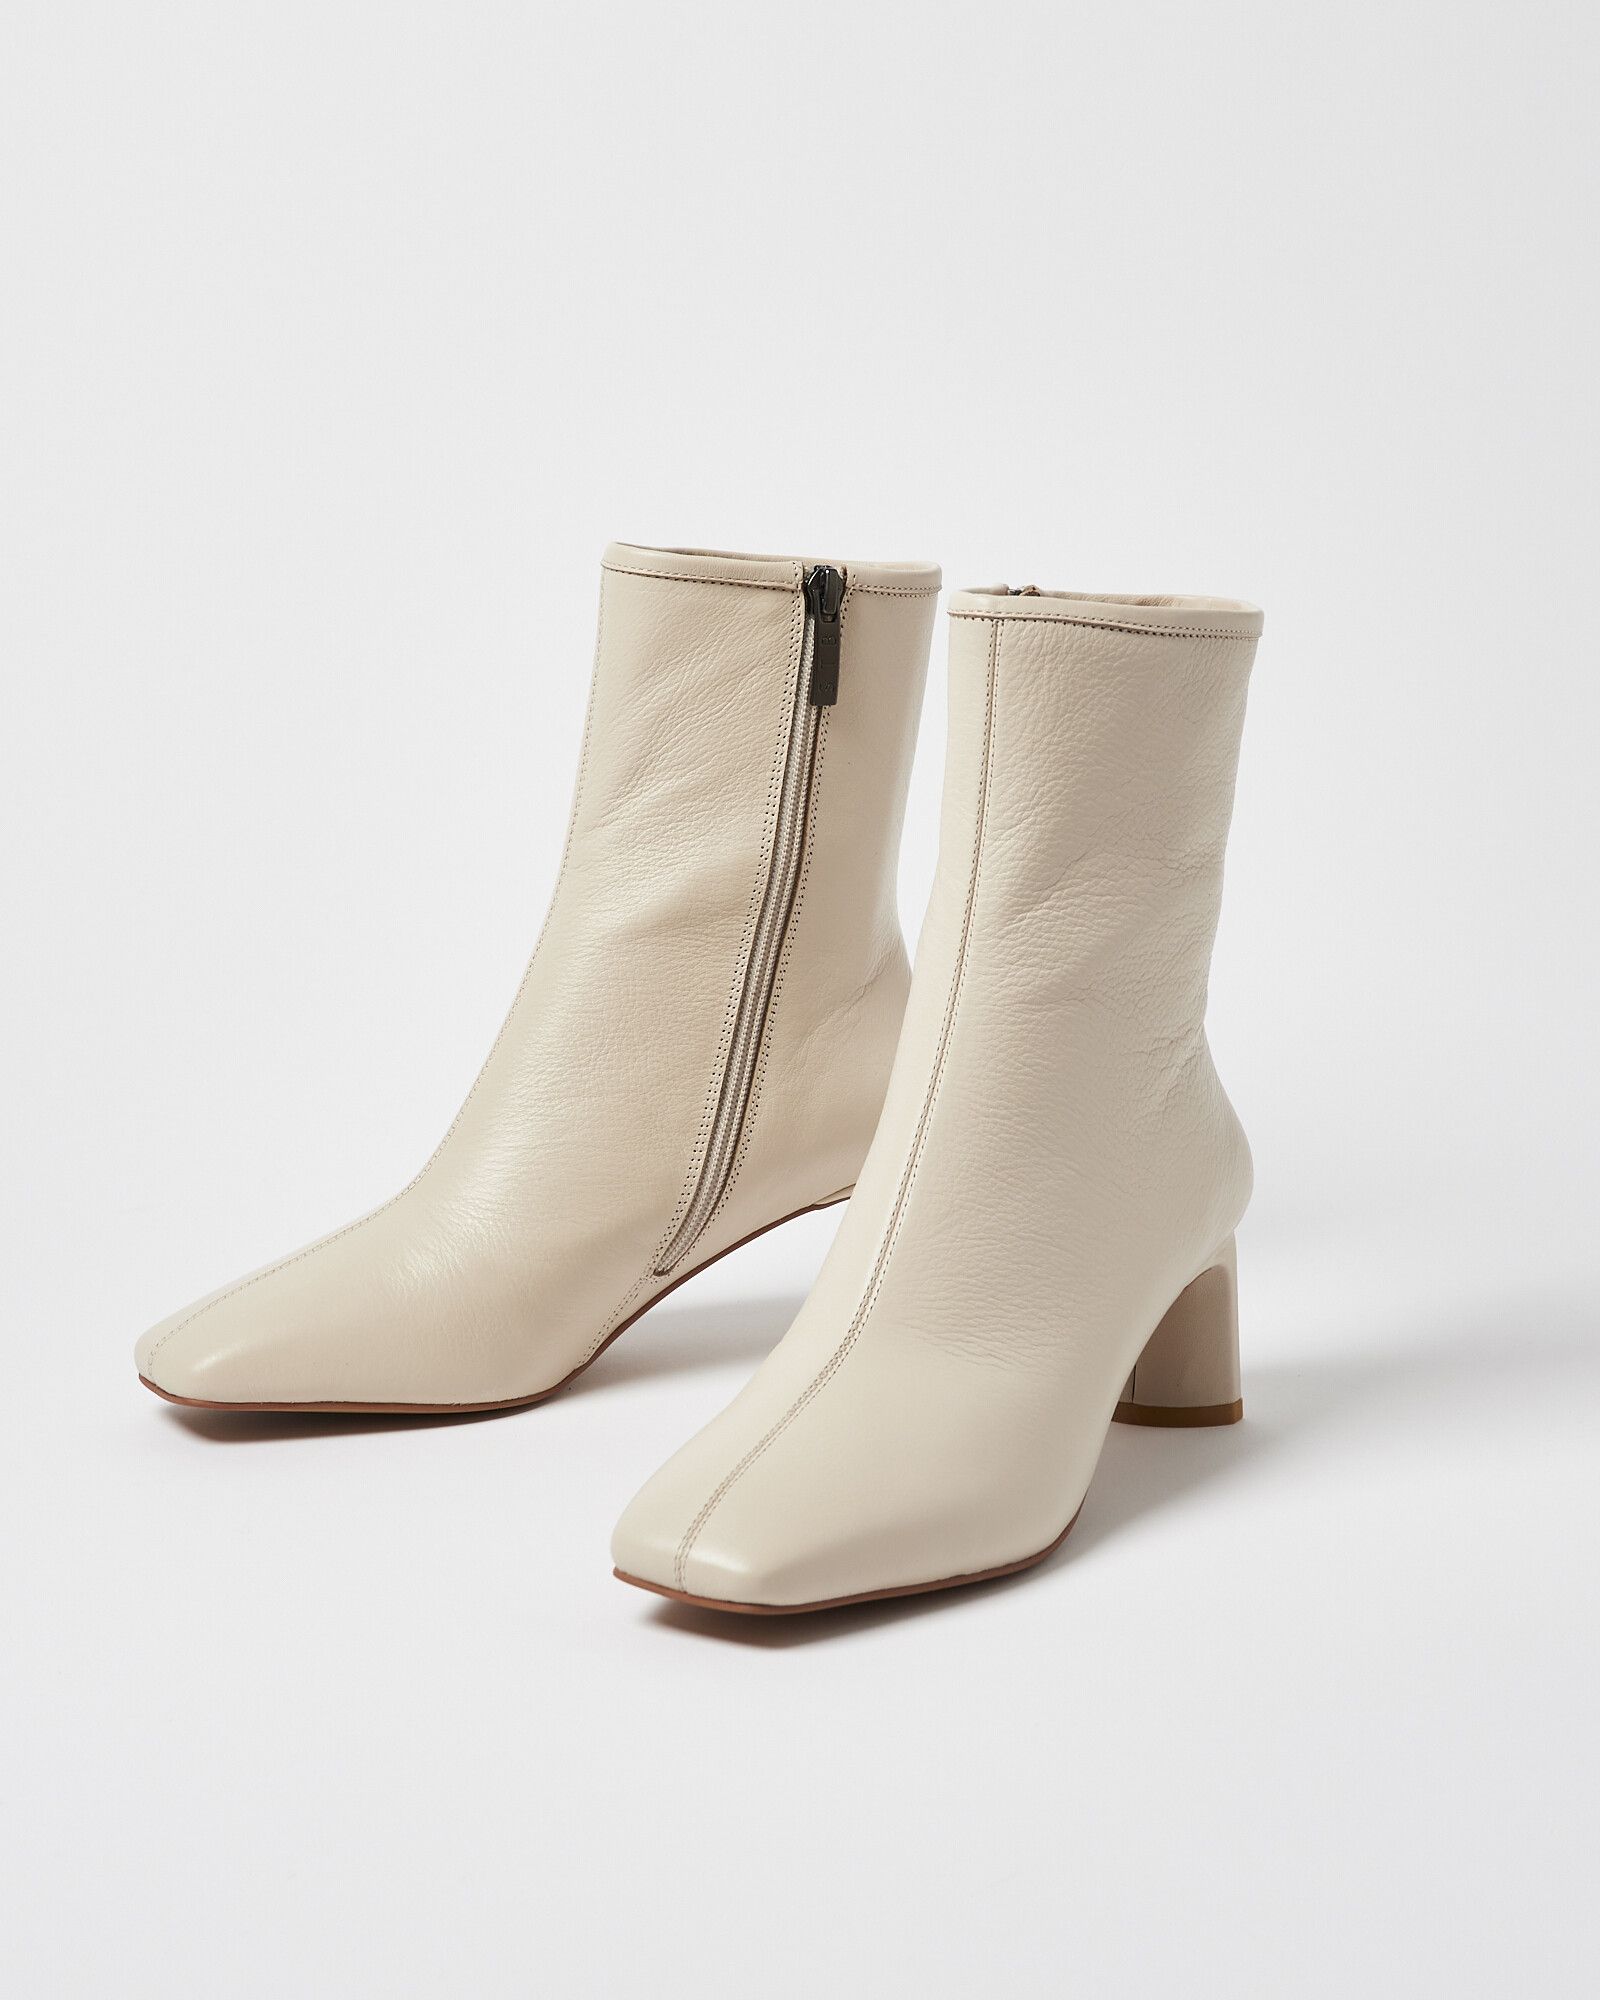 Shoe The Bear Arlo Square Toe Cream Leather Boots | Oliver Bonas